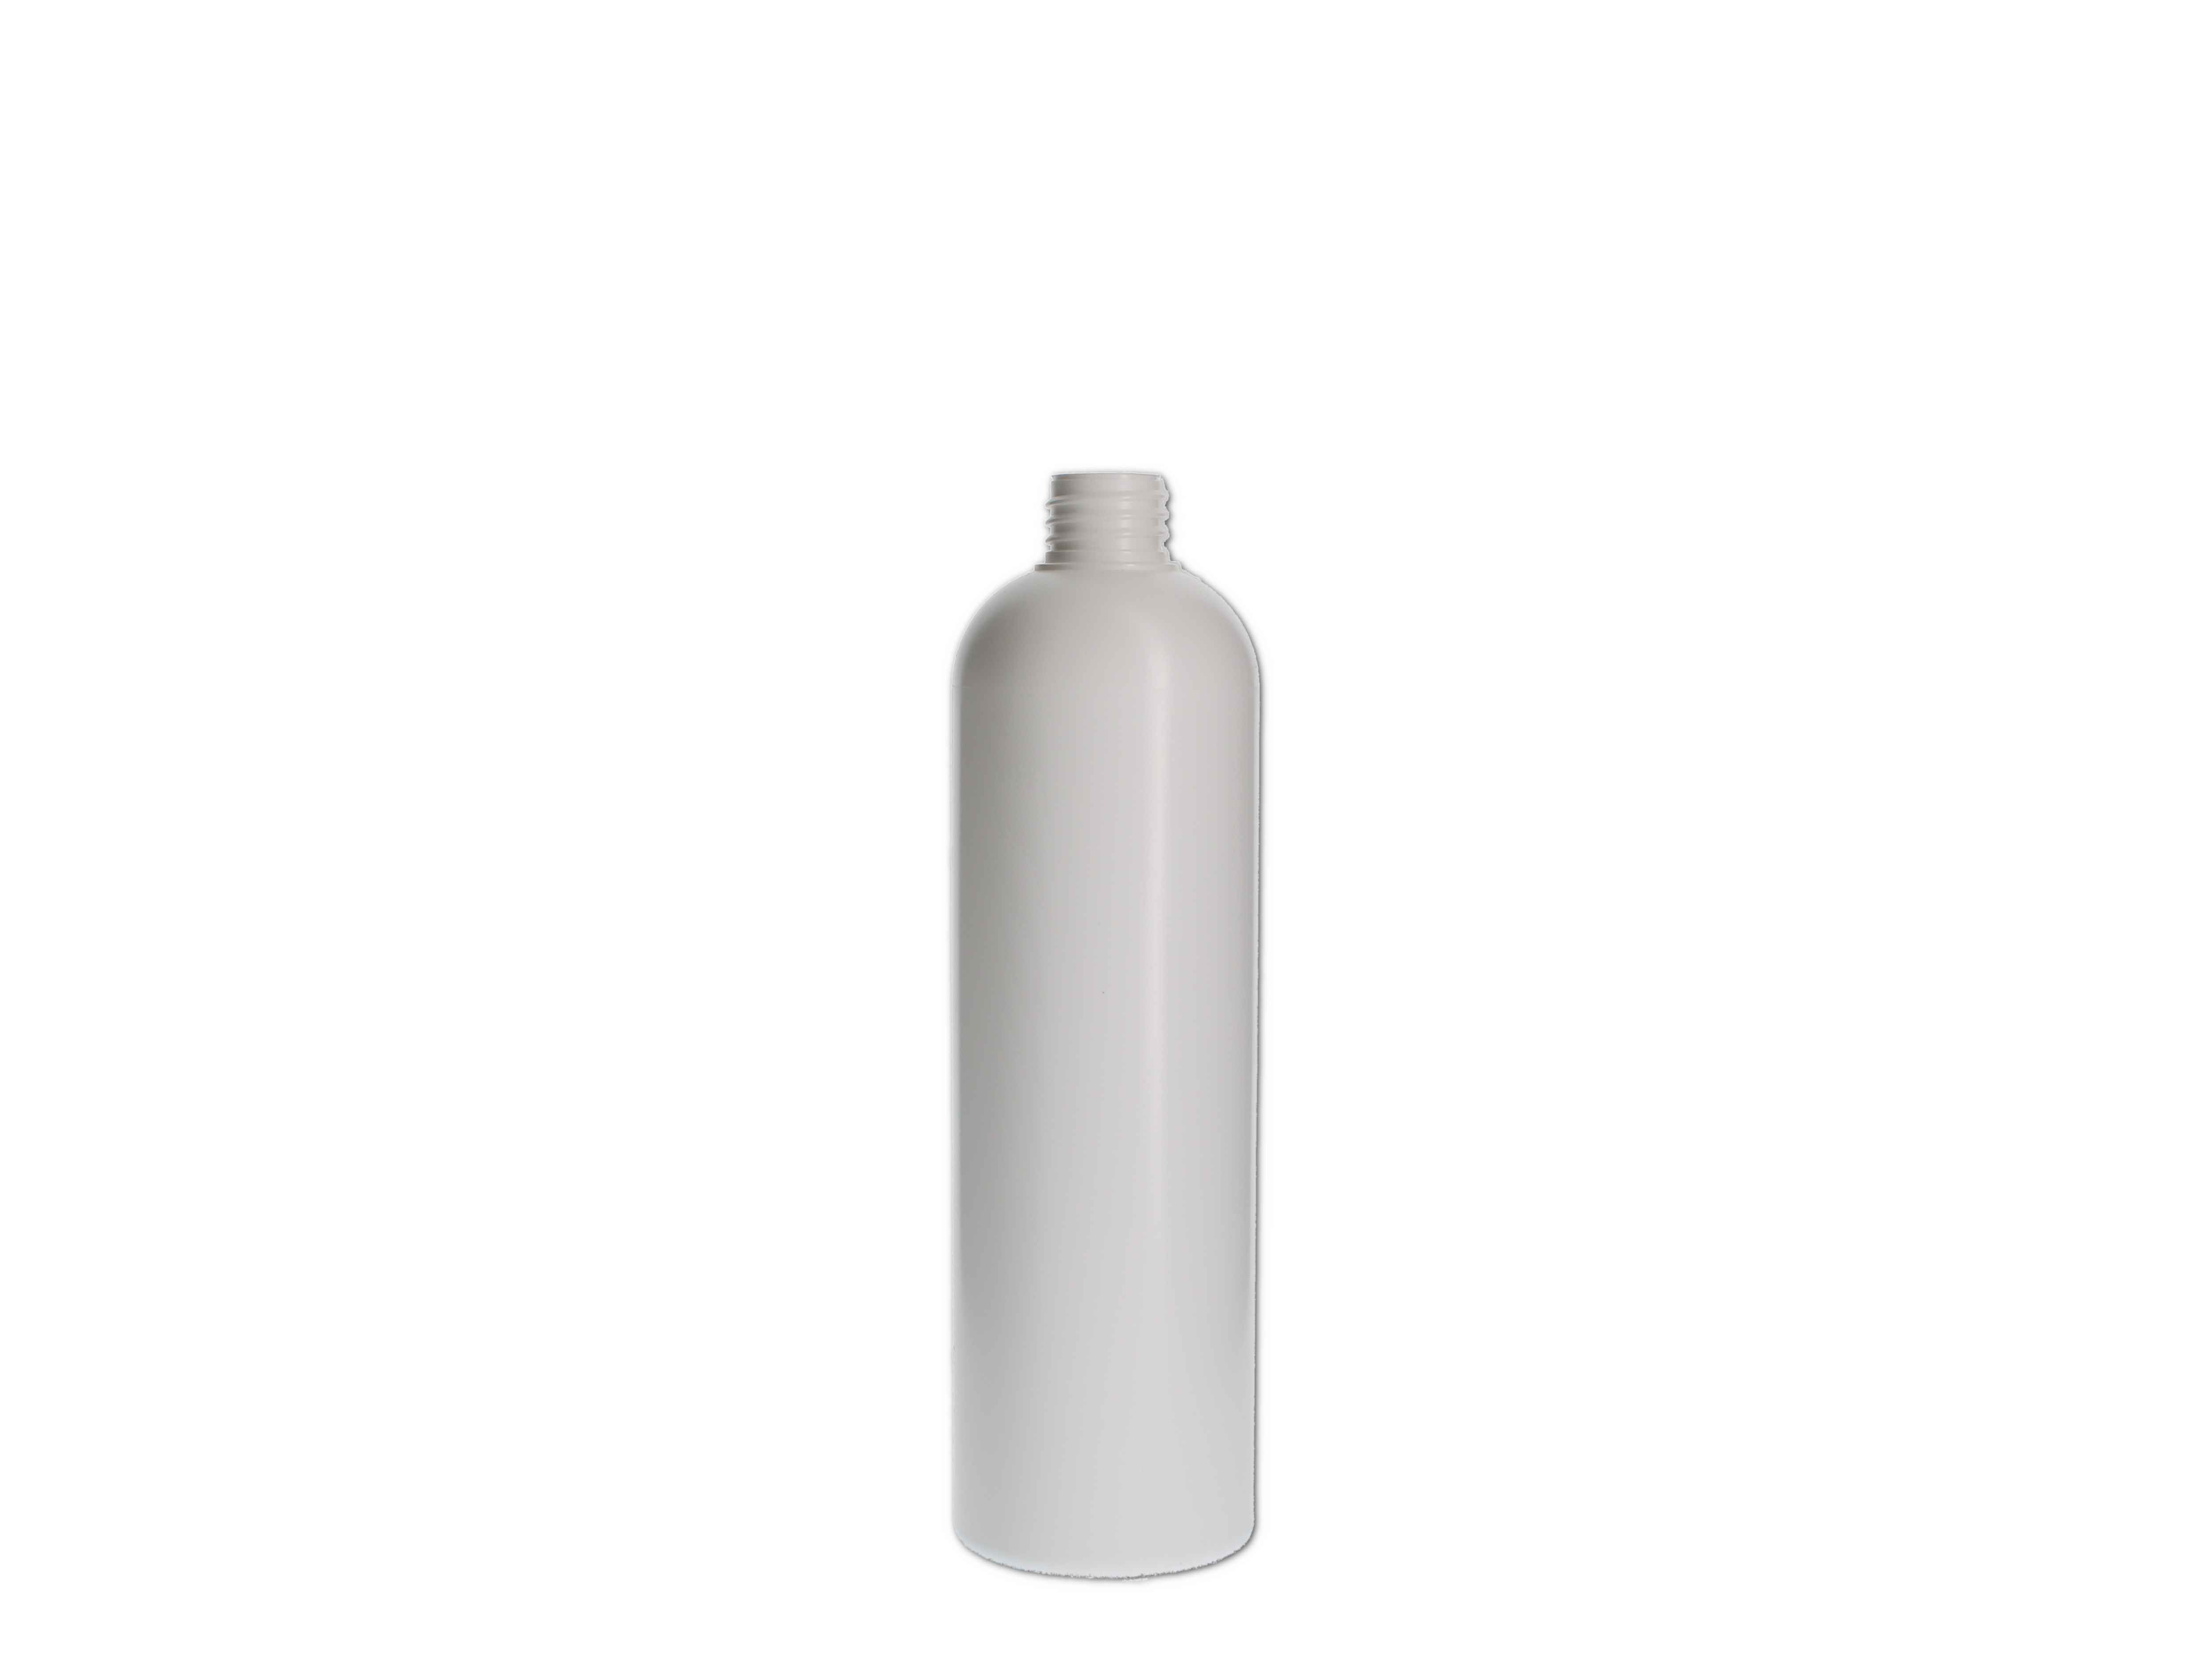    Kosmetikflasche, Kunststoff weiß, rund 250ml